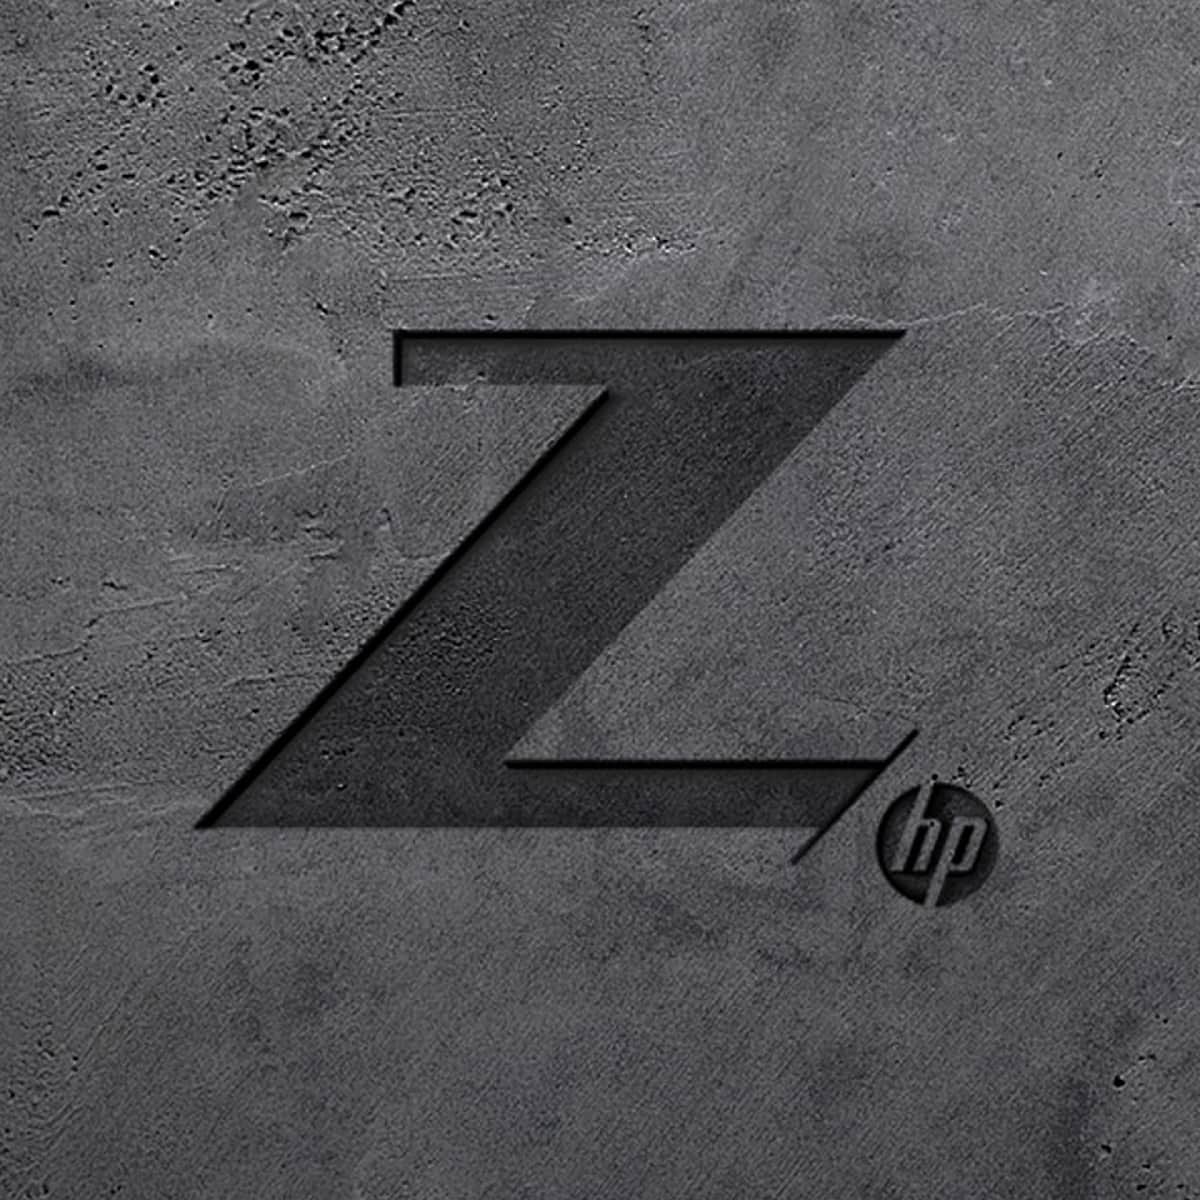 Z by HP 